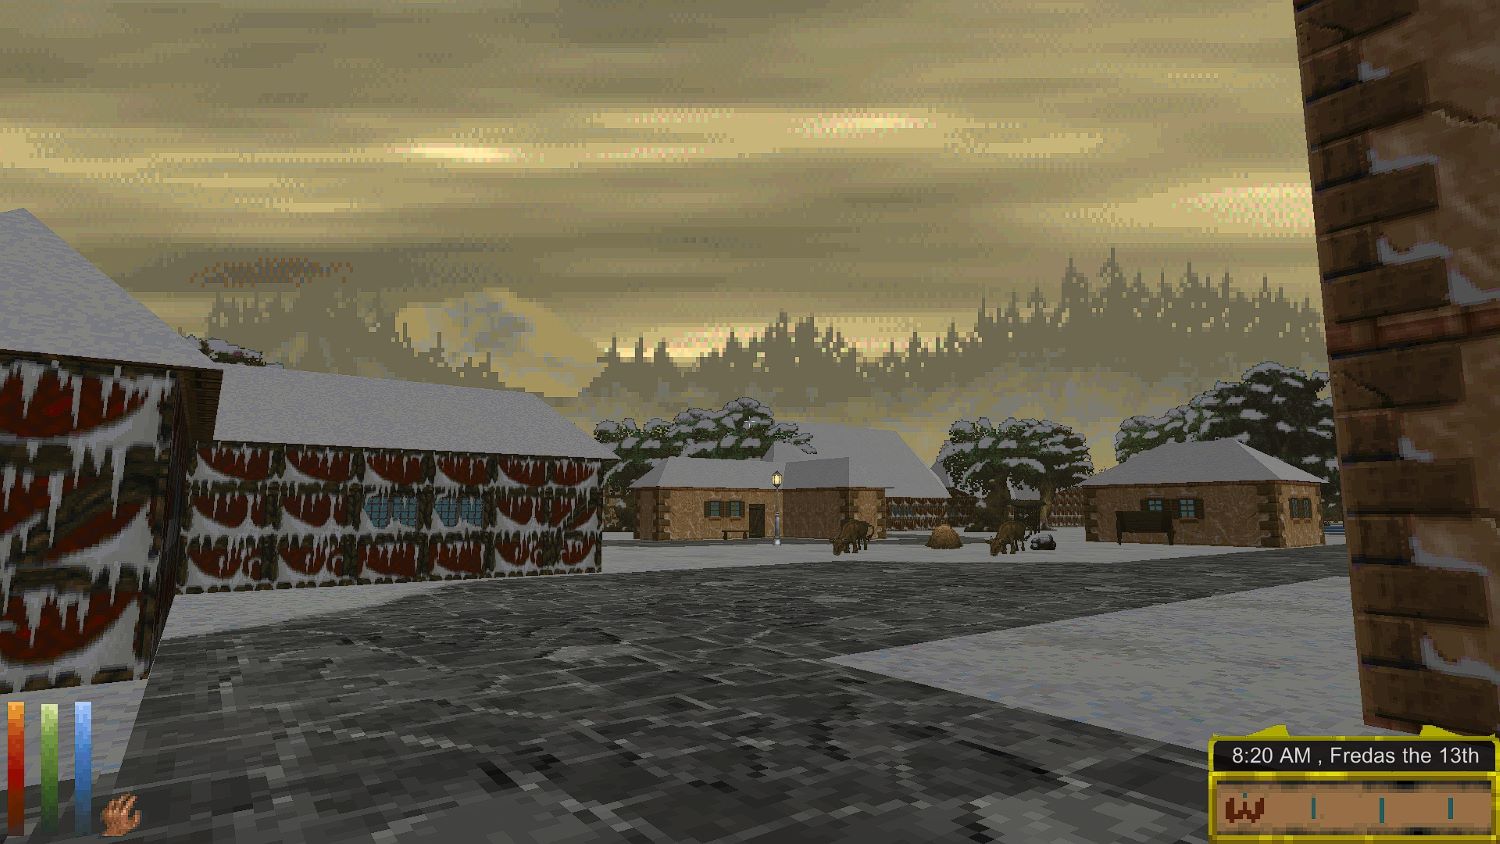 a wintery street scene